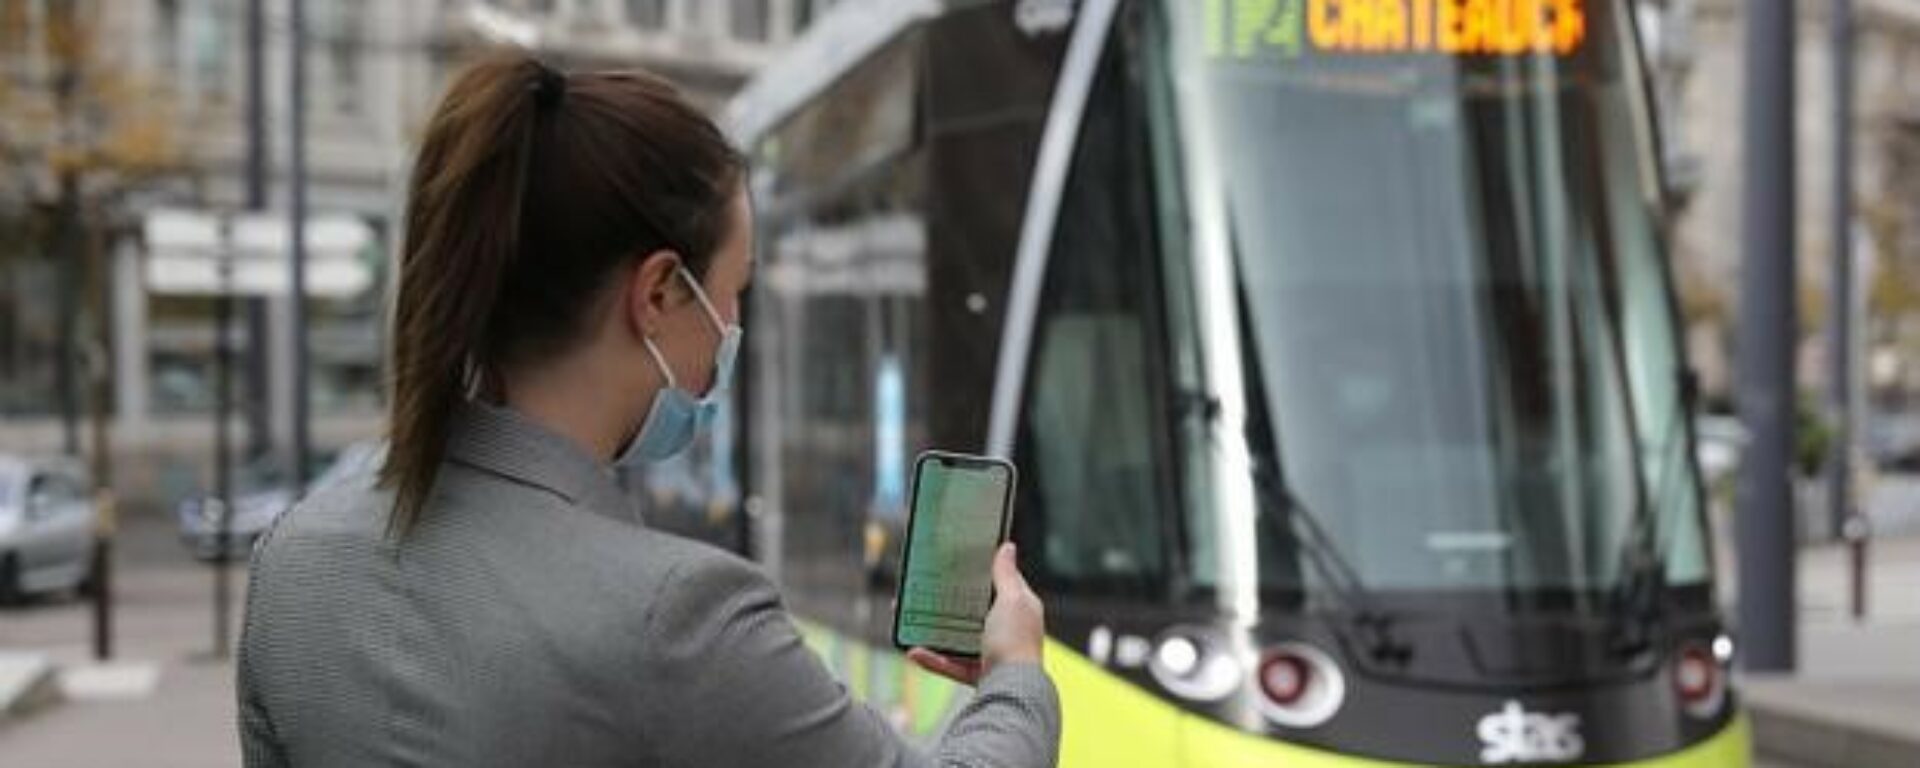 Jeune femme de dos utilise application mobile devant un tramway de Saint Etienne